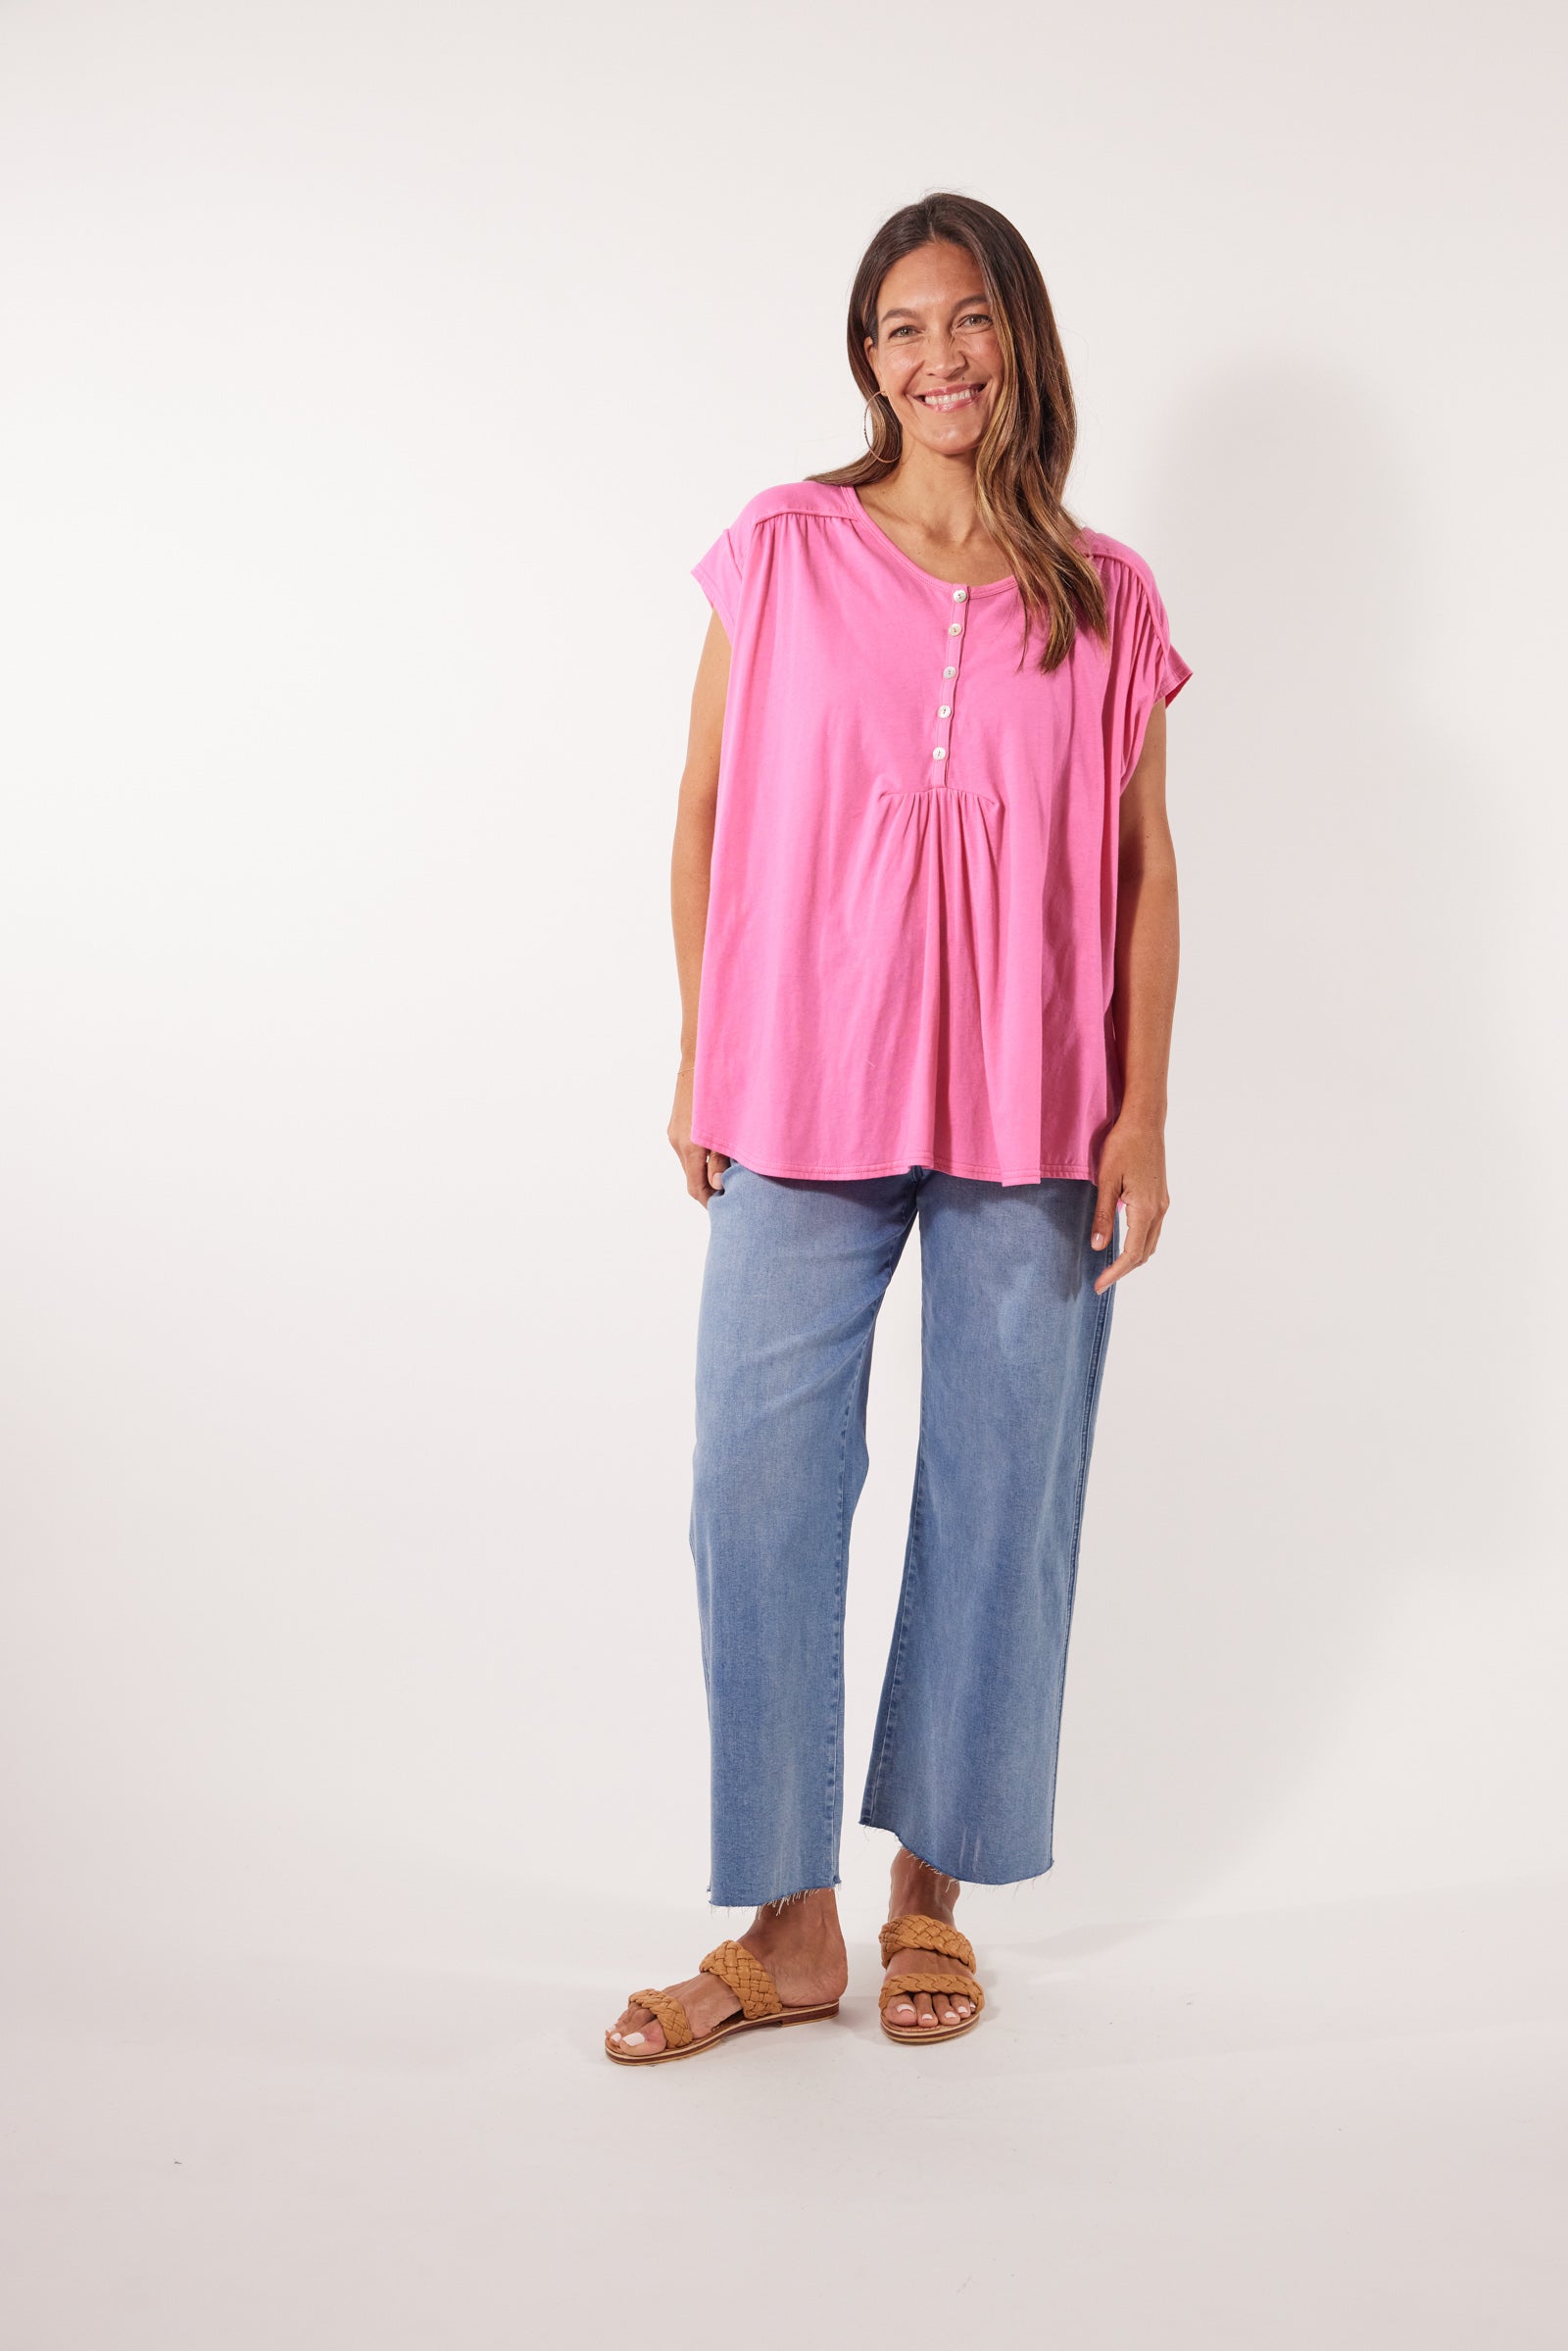 Tisane Tshirt - Camelia - Isle of Mine Clothing - Top Tshirt S/S One Size